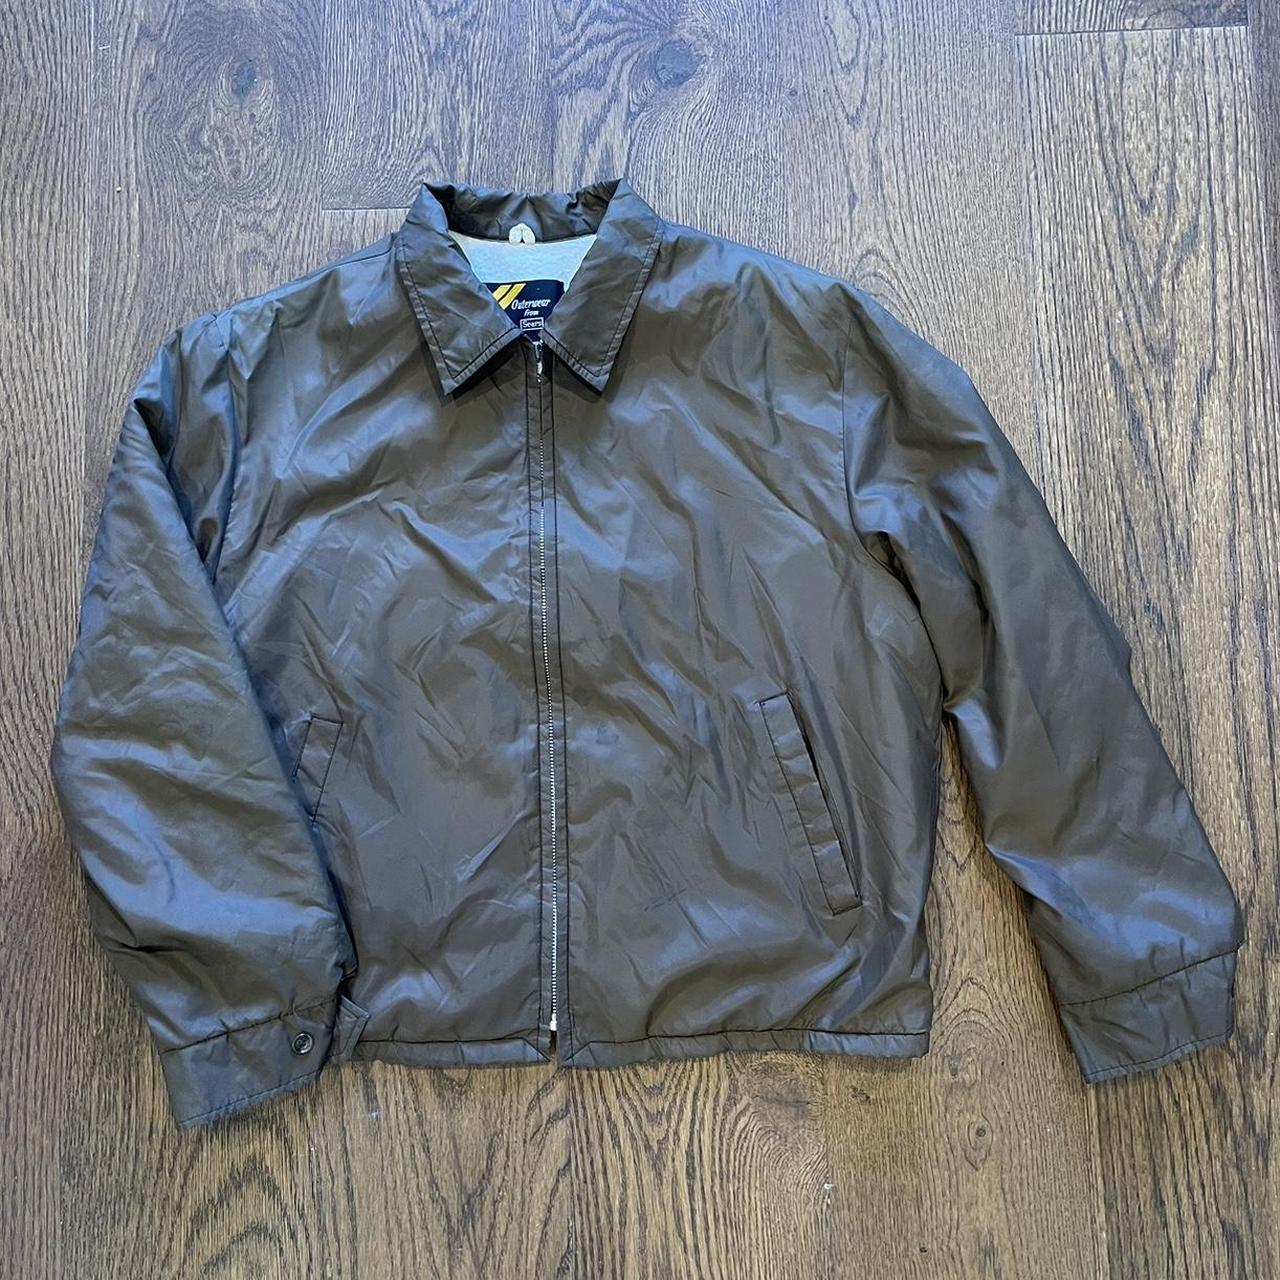 Sears Men's Brown Jacket